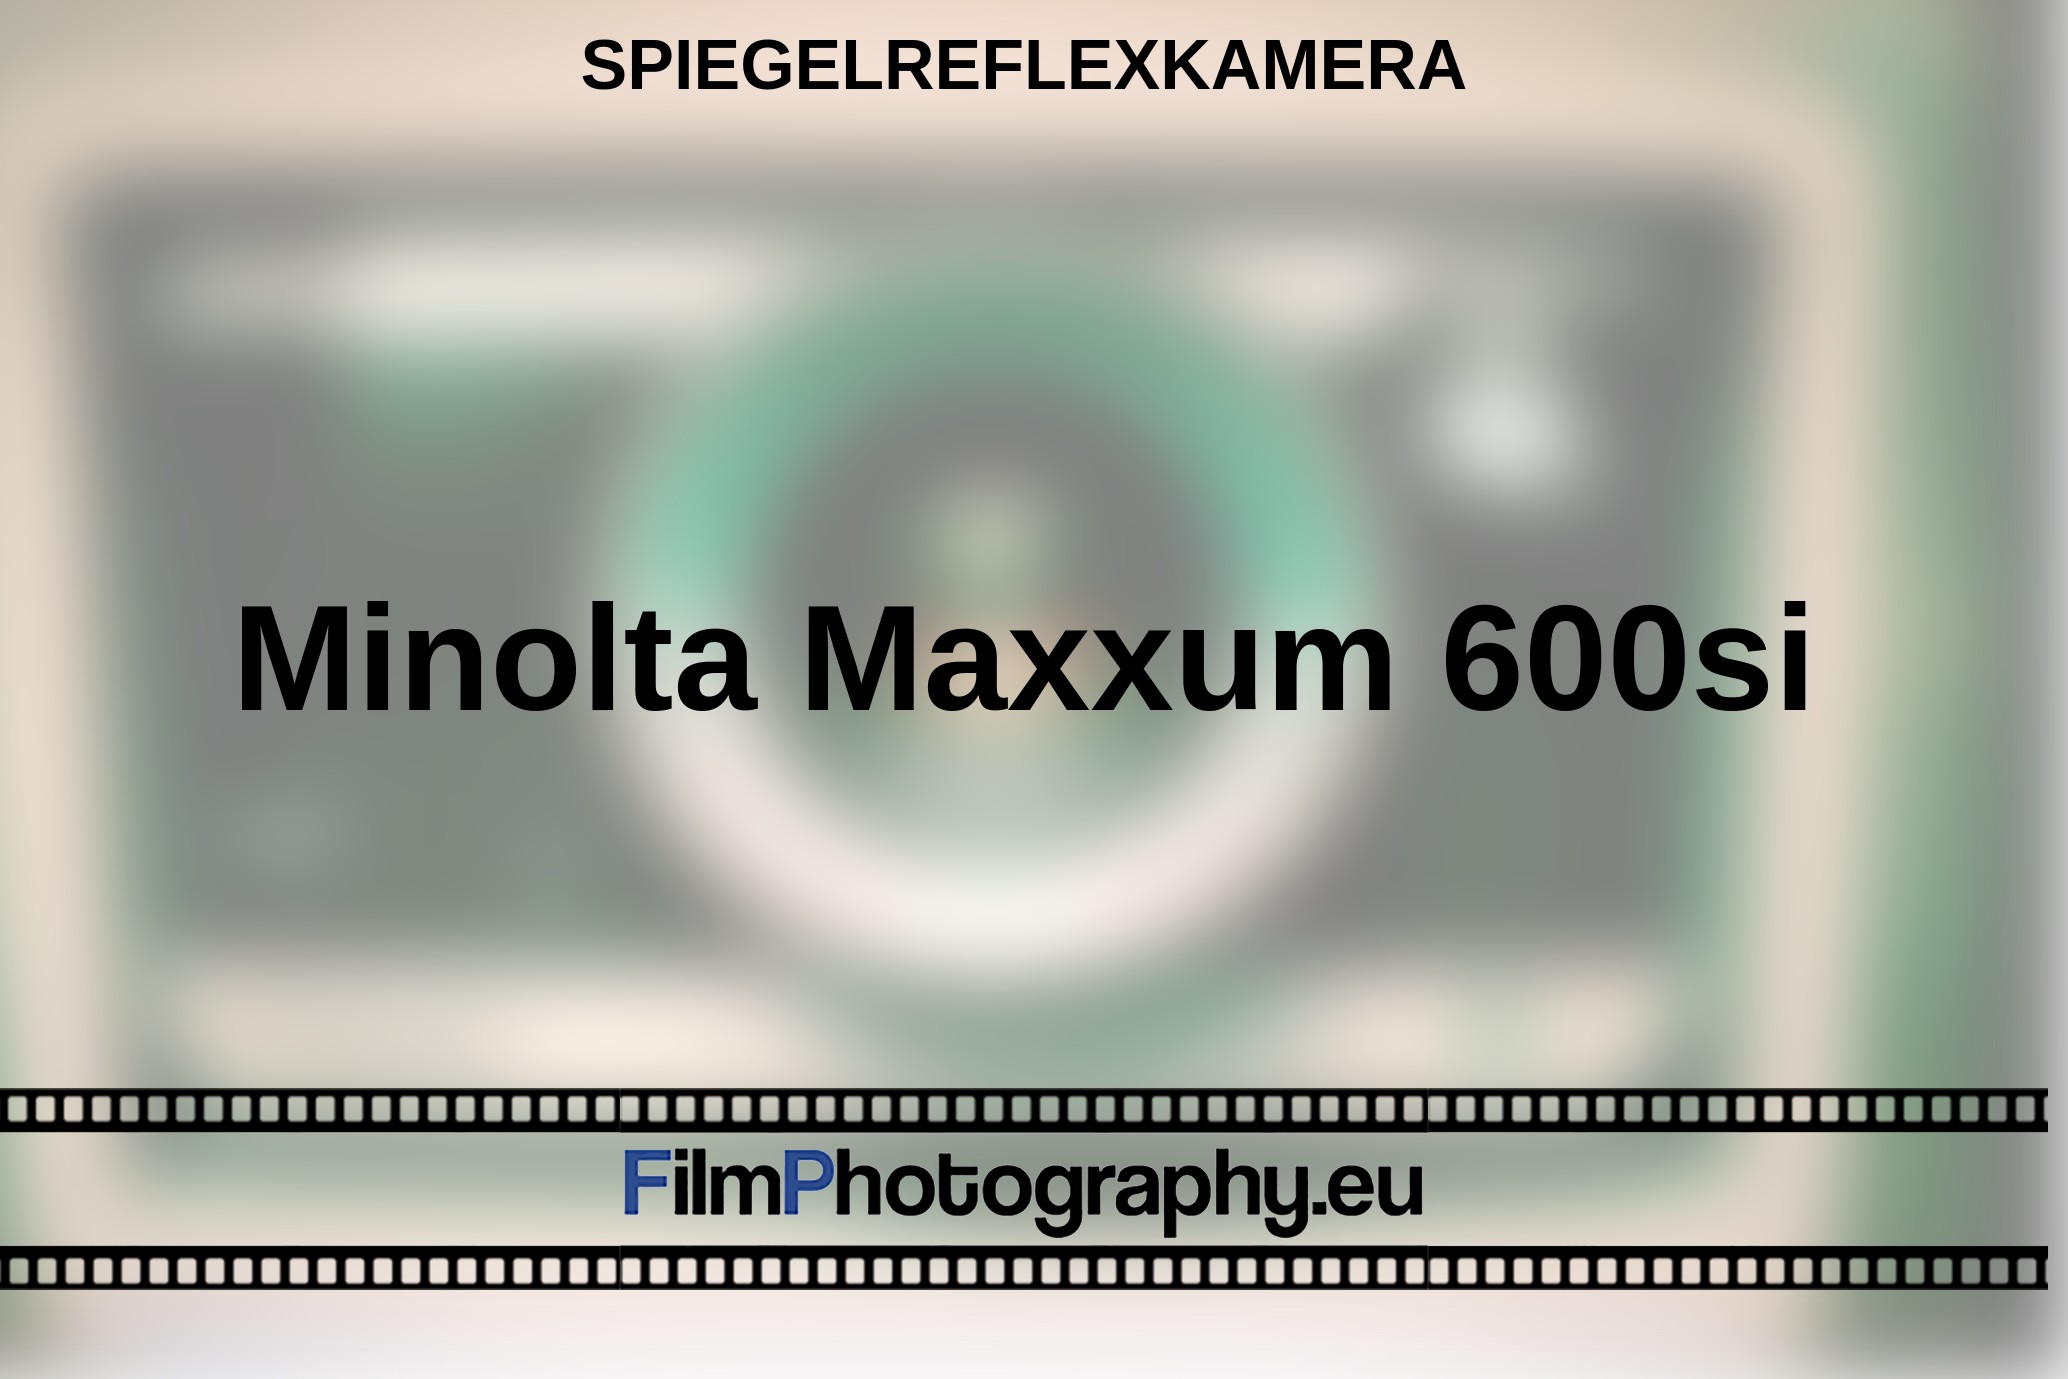 Minolta-Maxxum-600si-Spiegelreflexkamera-bnv.jpg